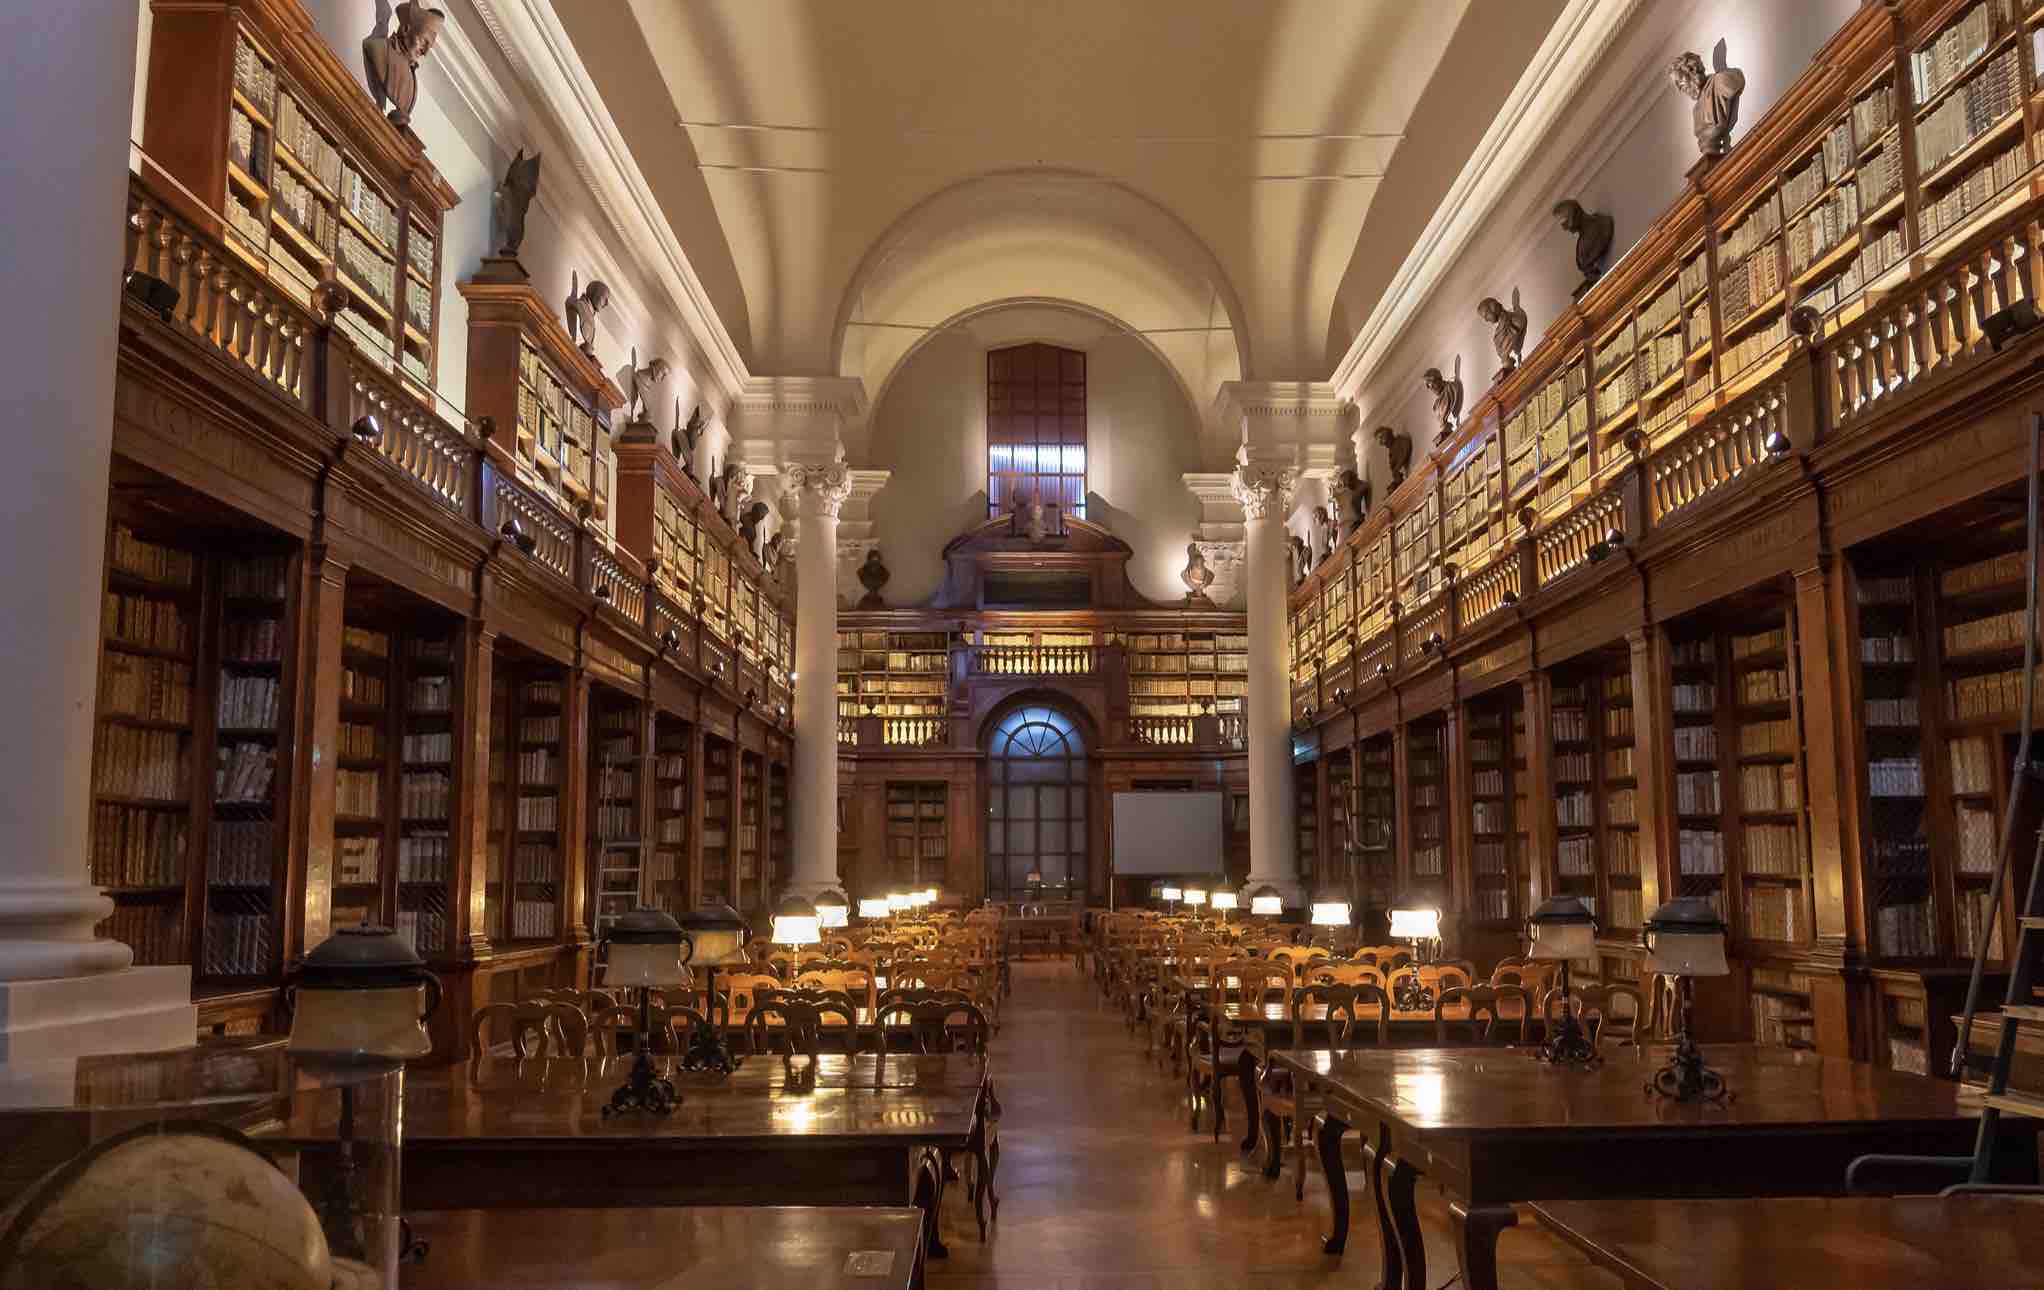 Бібліотека Інституту наук Болонського університету — найстарішого університету в Європі та світі. У його стінах народилася ідея про створення єдиного європейського навчального простору. Джерело фото: Flickr.com<br>